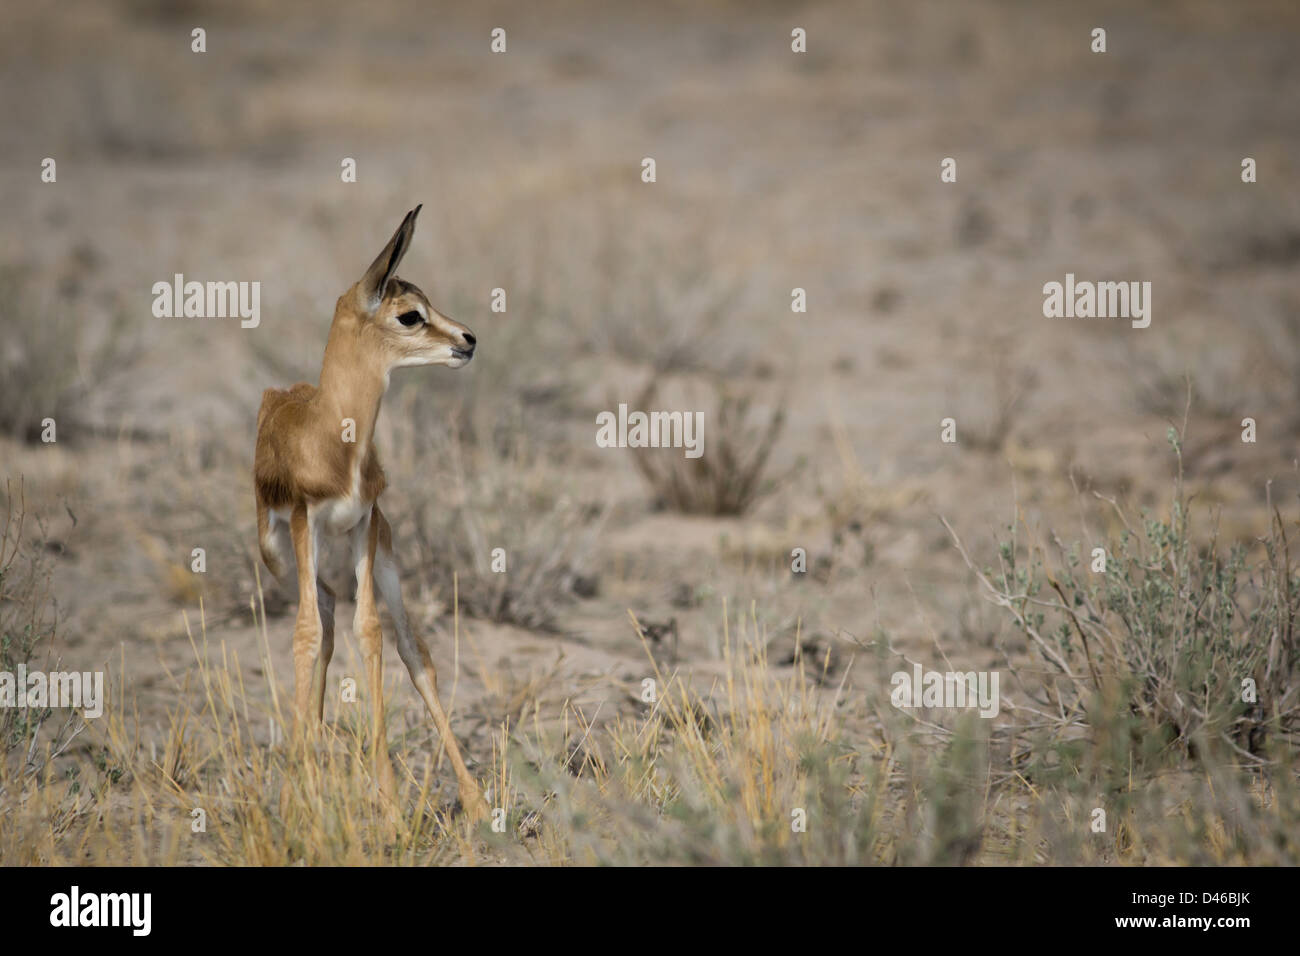 Gefährdete Springbock Antilope Kleinkind, in der Einsamkeit in der Kalahari-Wüste Savanne. Scheint einsam und unsicher. Stockfoto